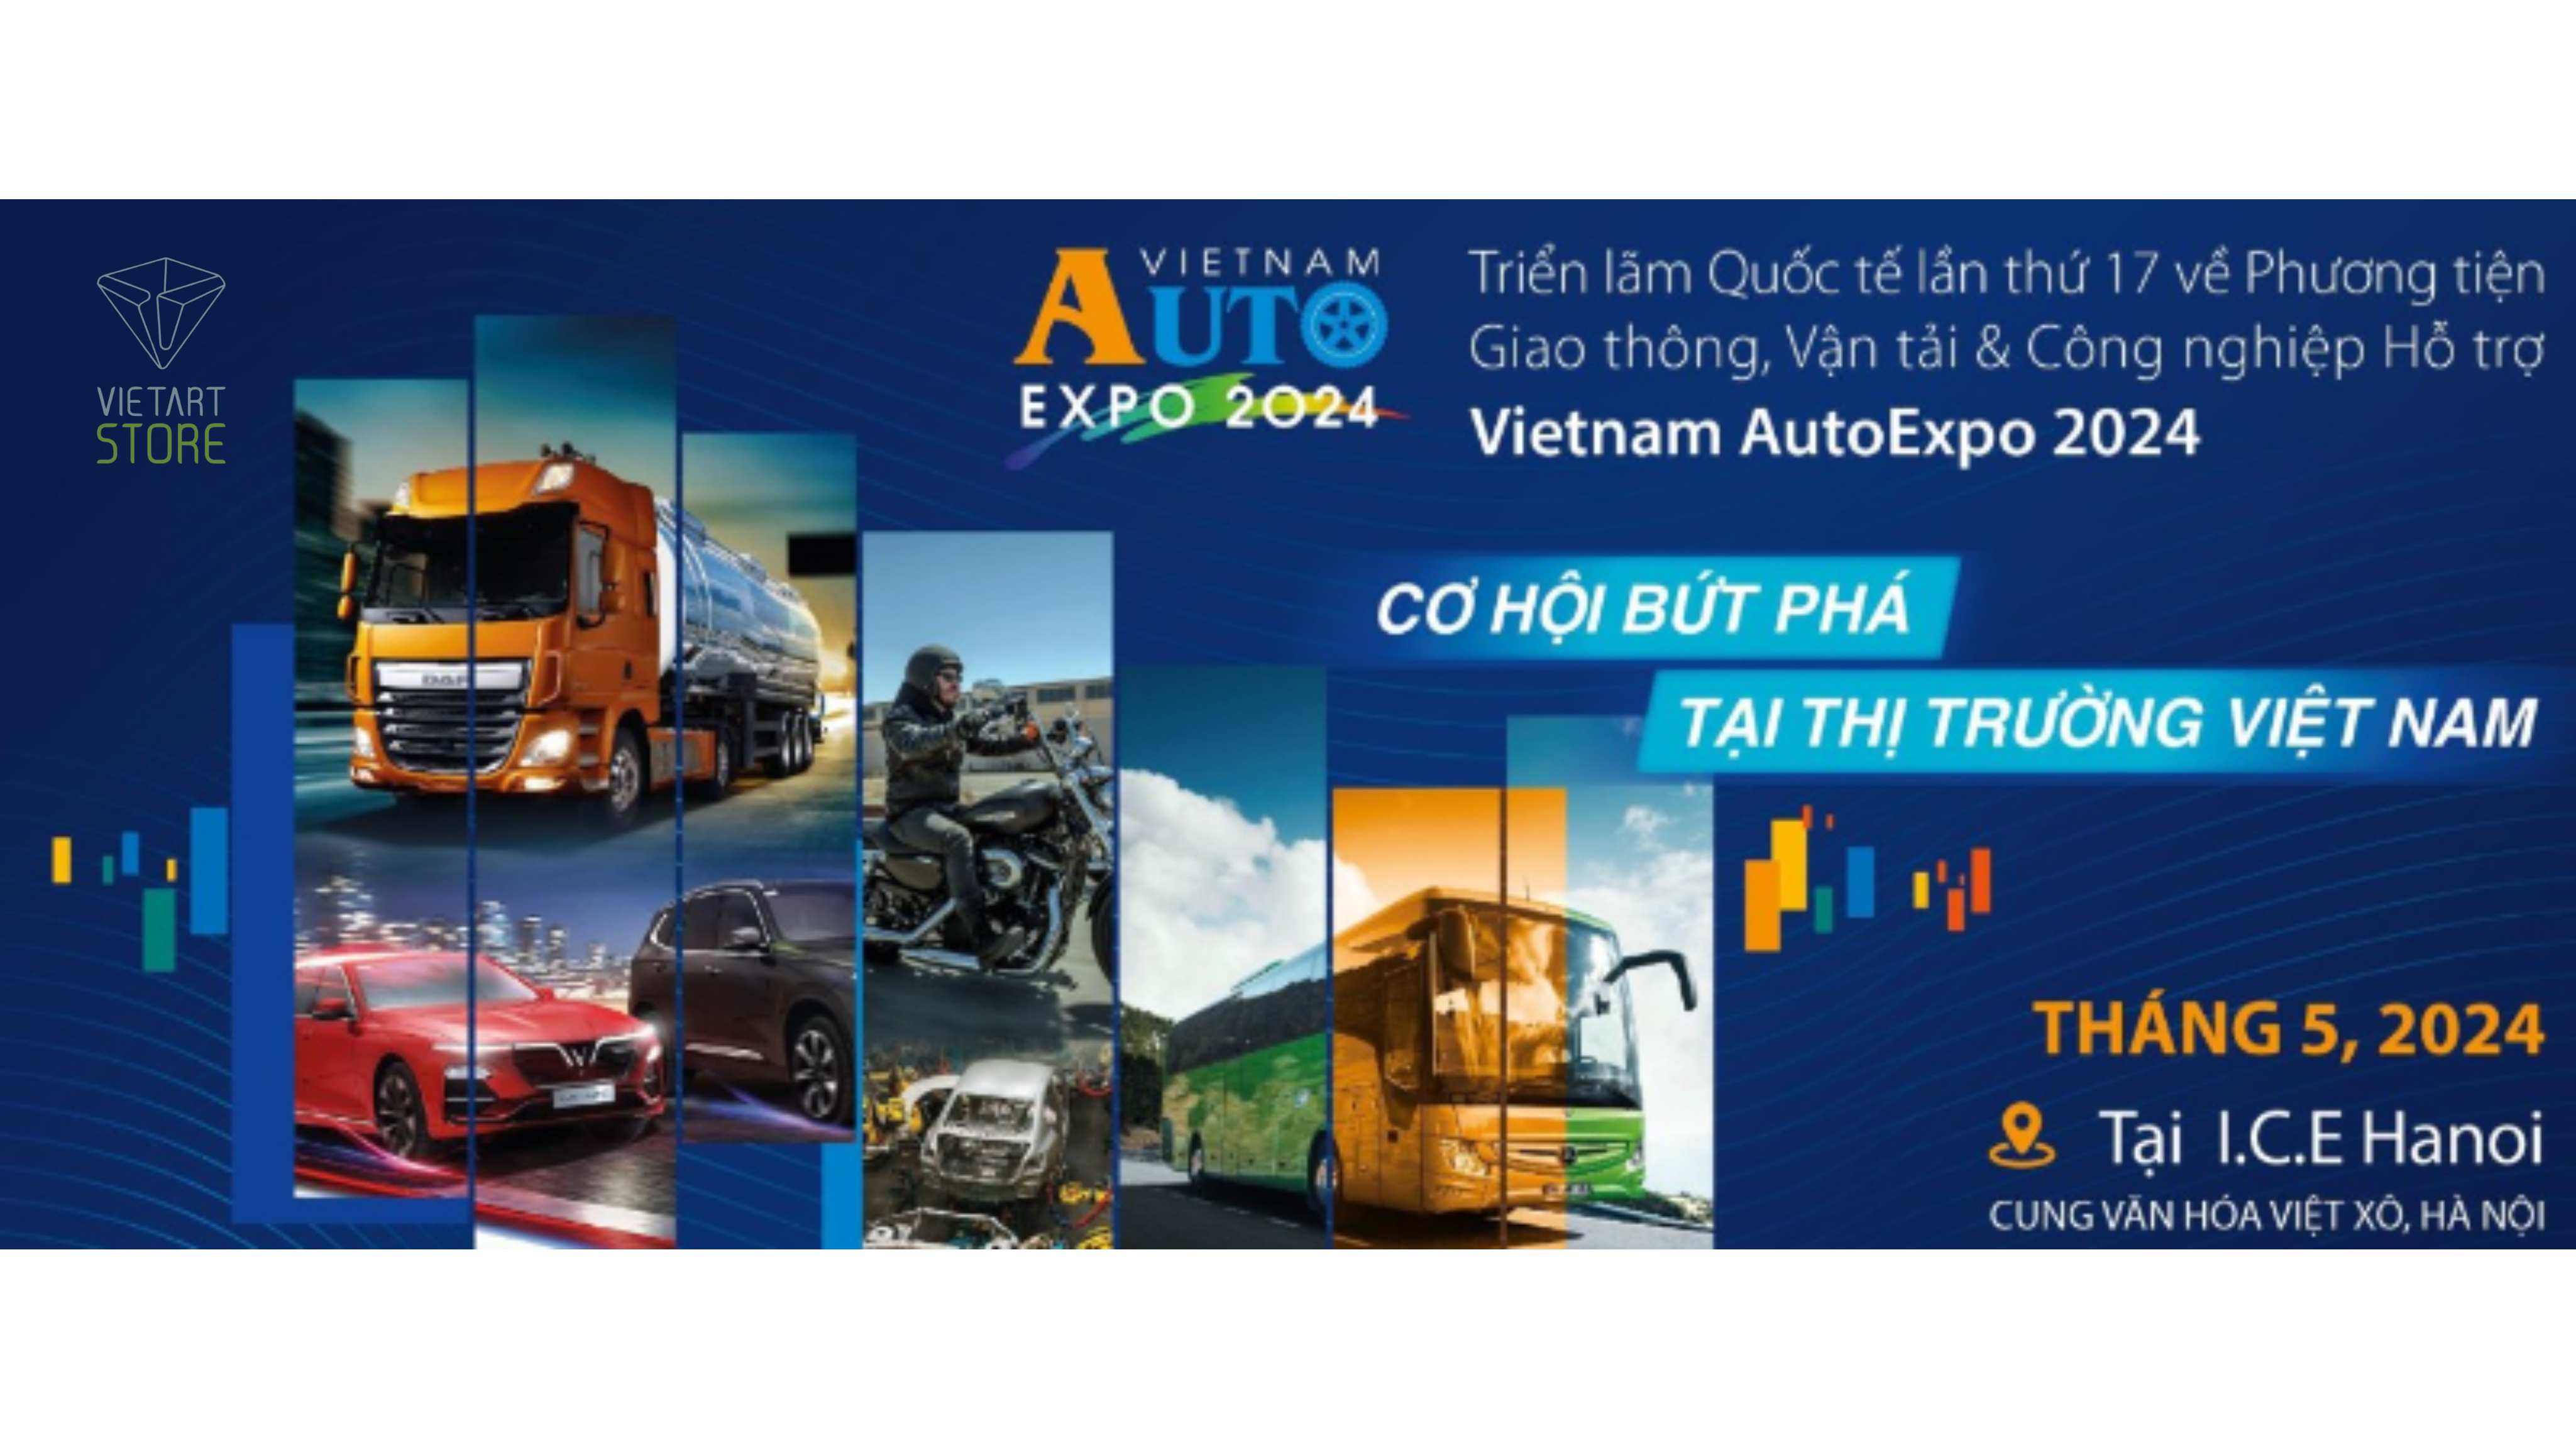 VietNam Auto Expo 2024